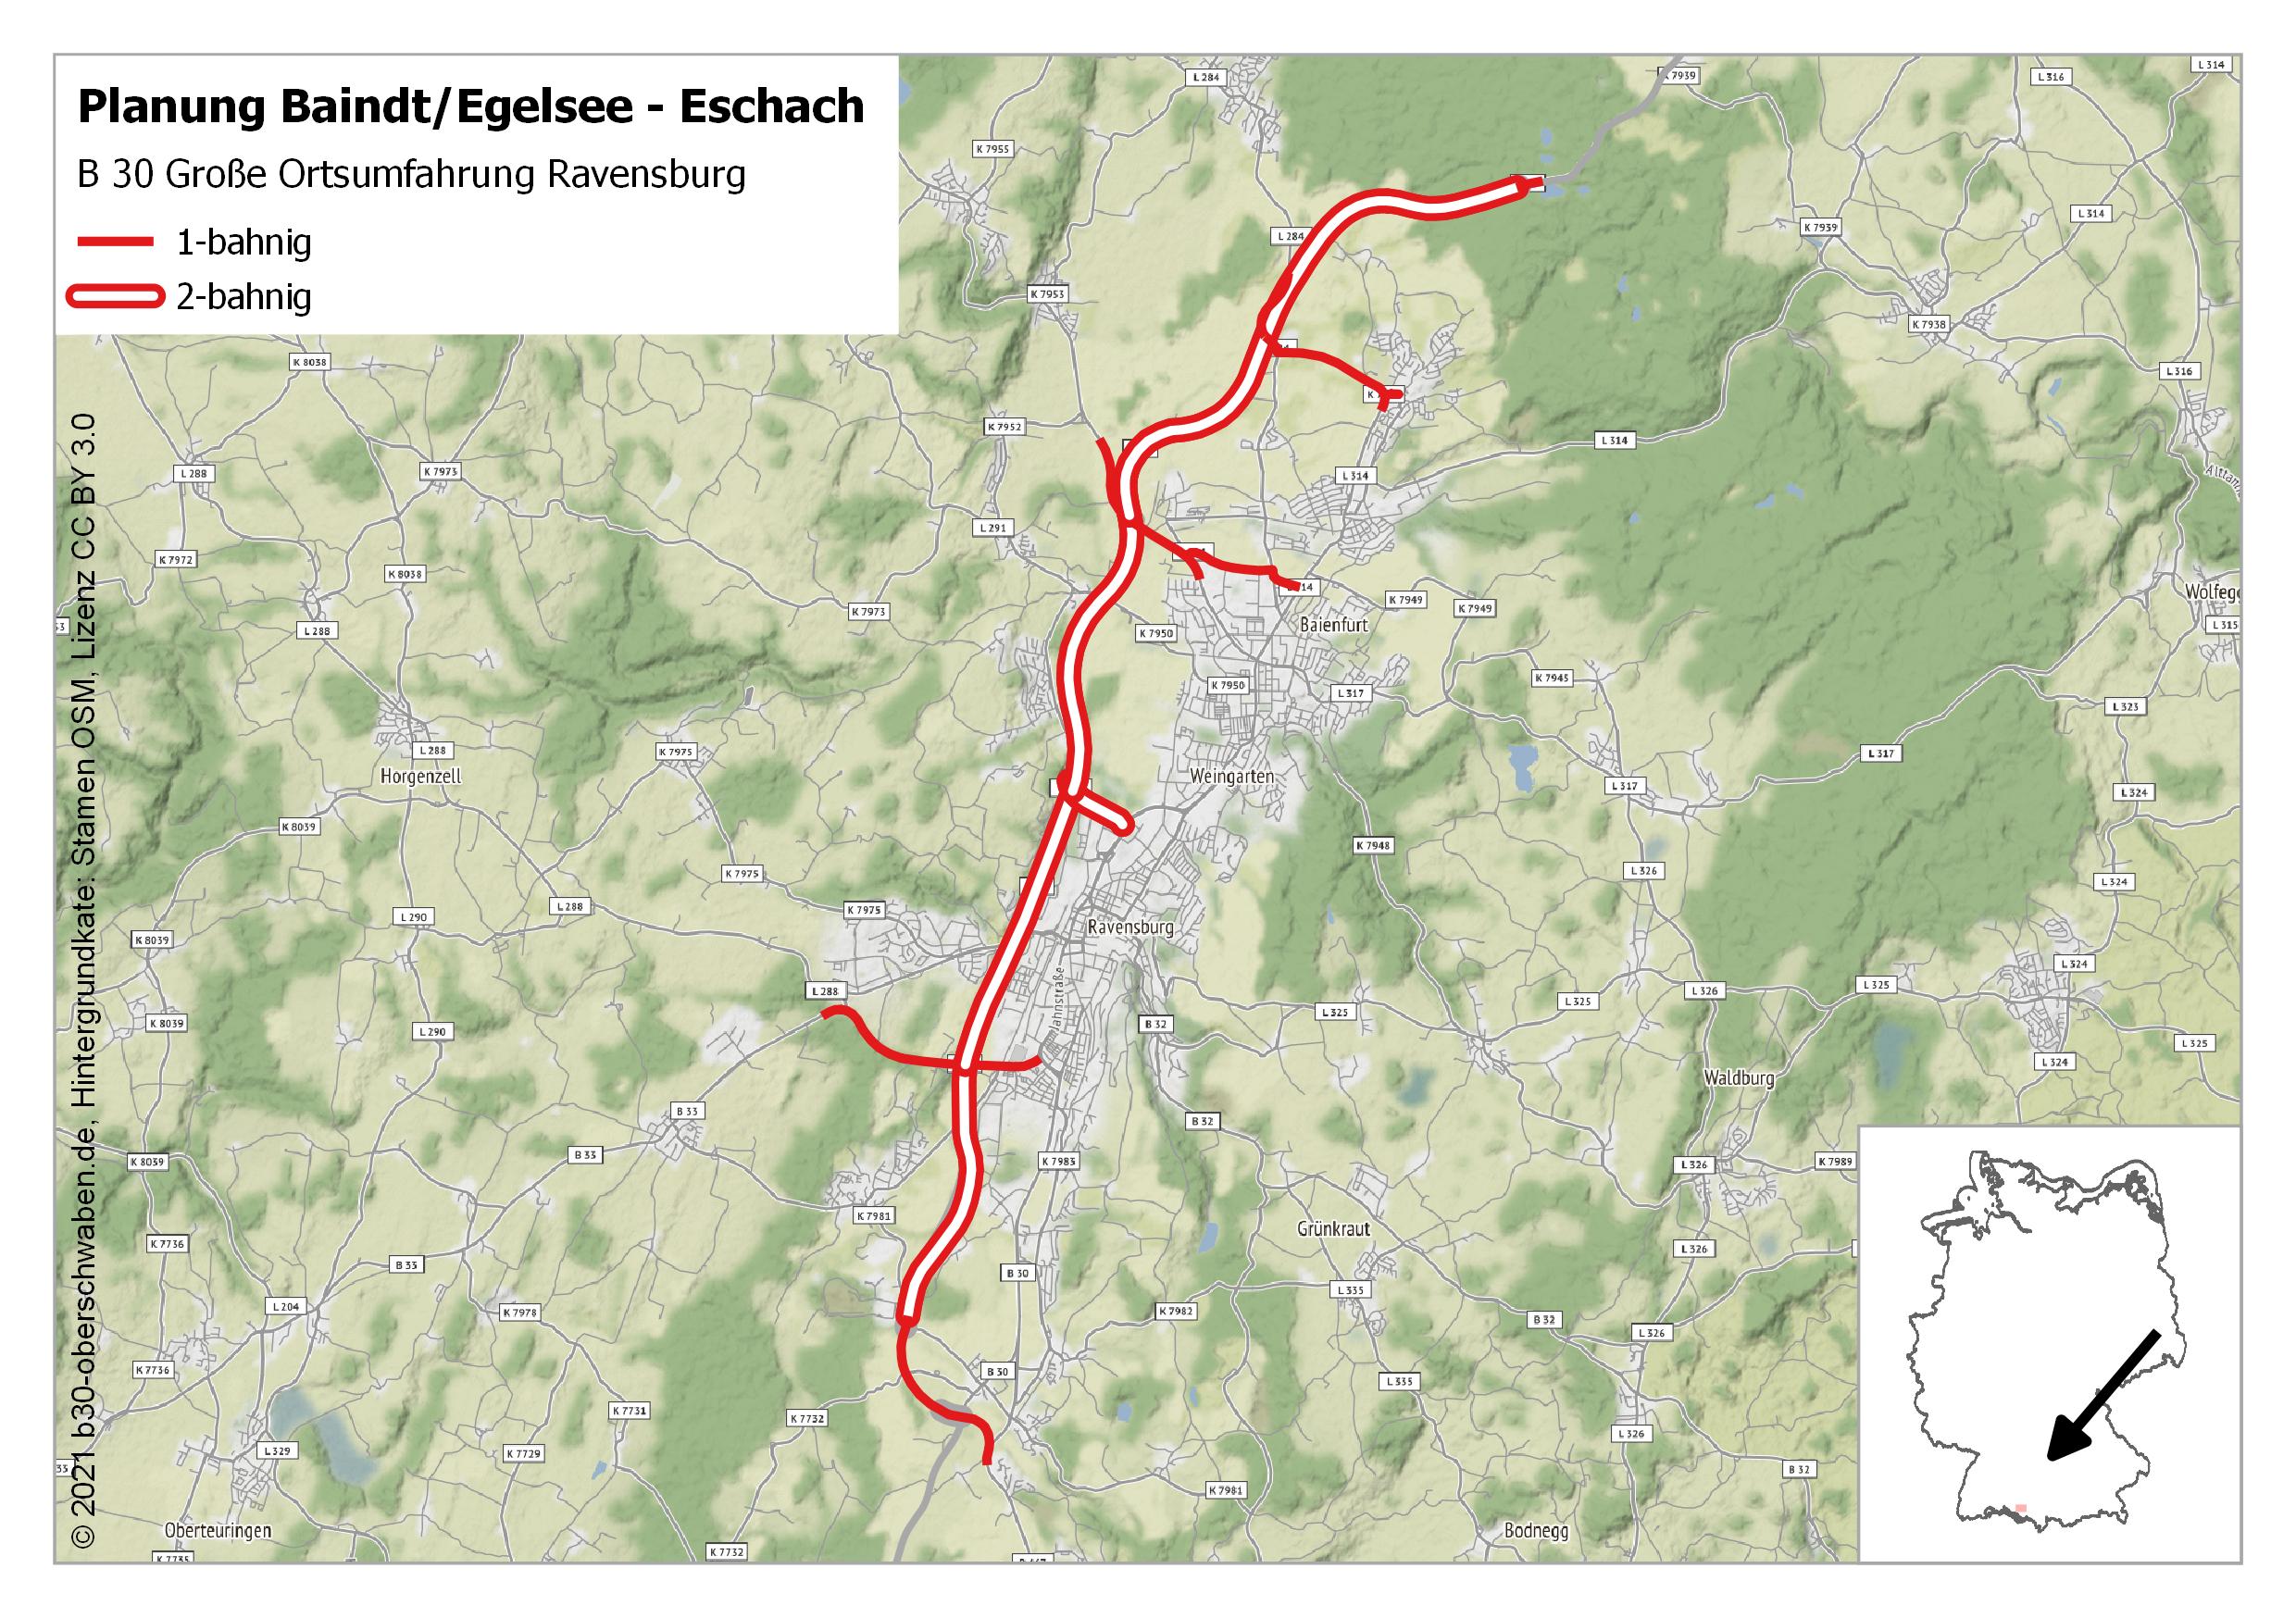 Planung Baindt/Egelsee - Eschach